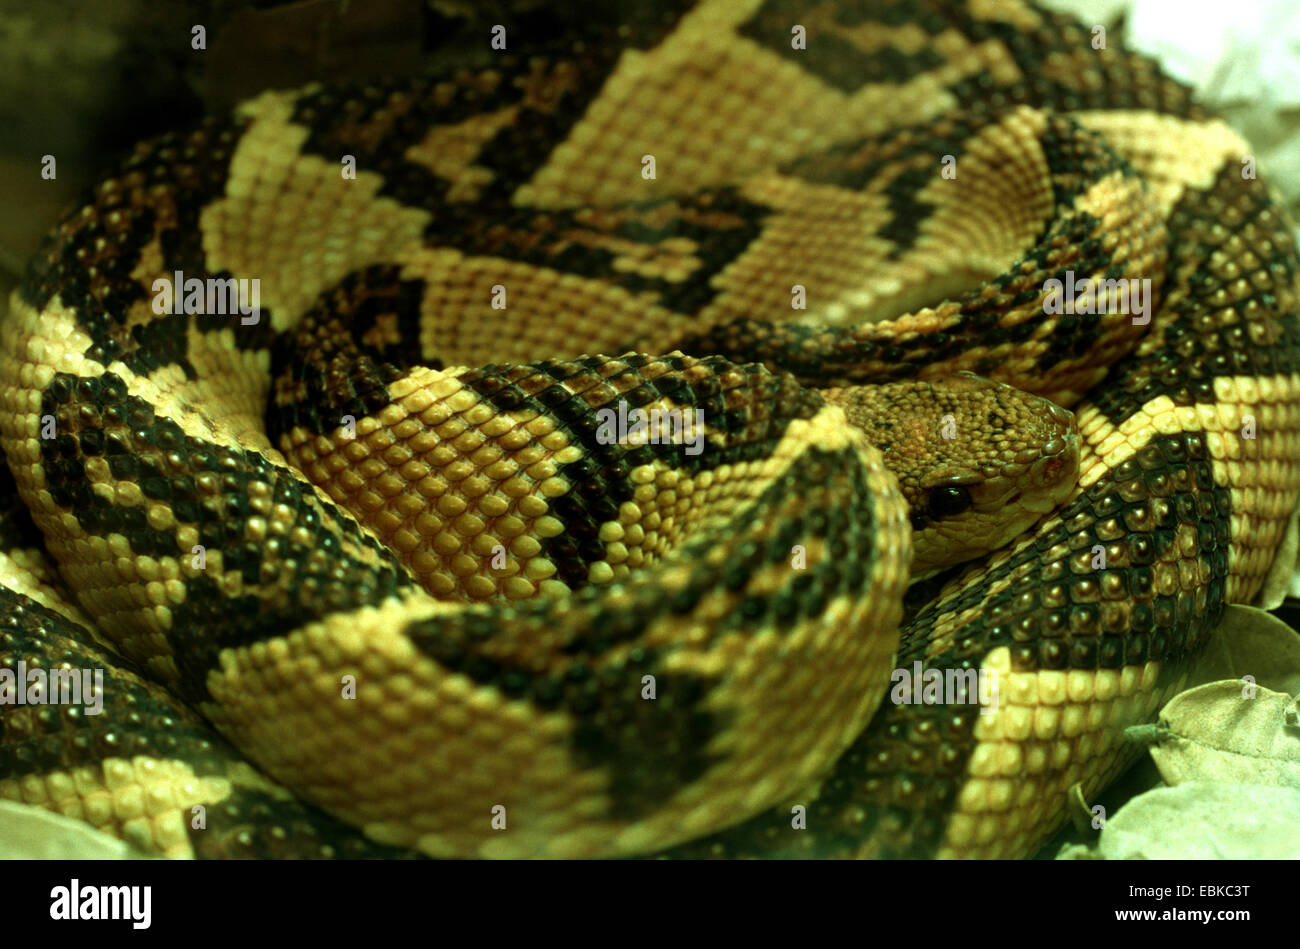 Bushmaster snake (Lachesis mutus, Lachesis muta, Lachesis muta muta), portrait Stock Photo